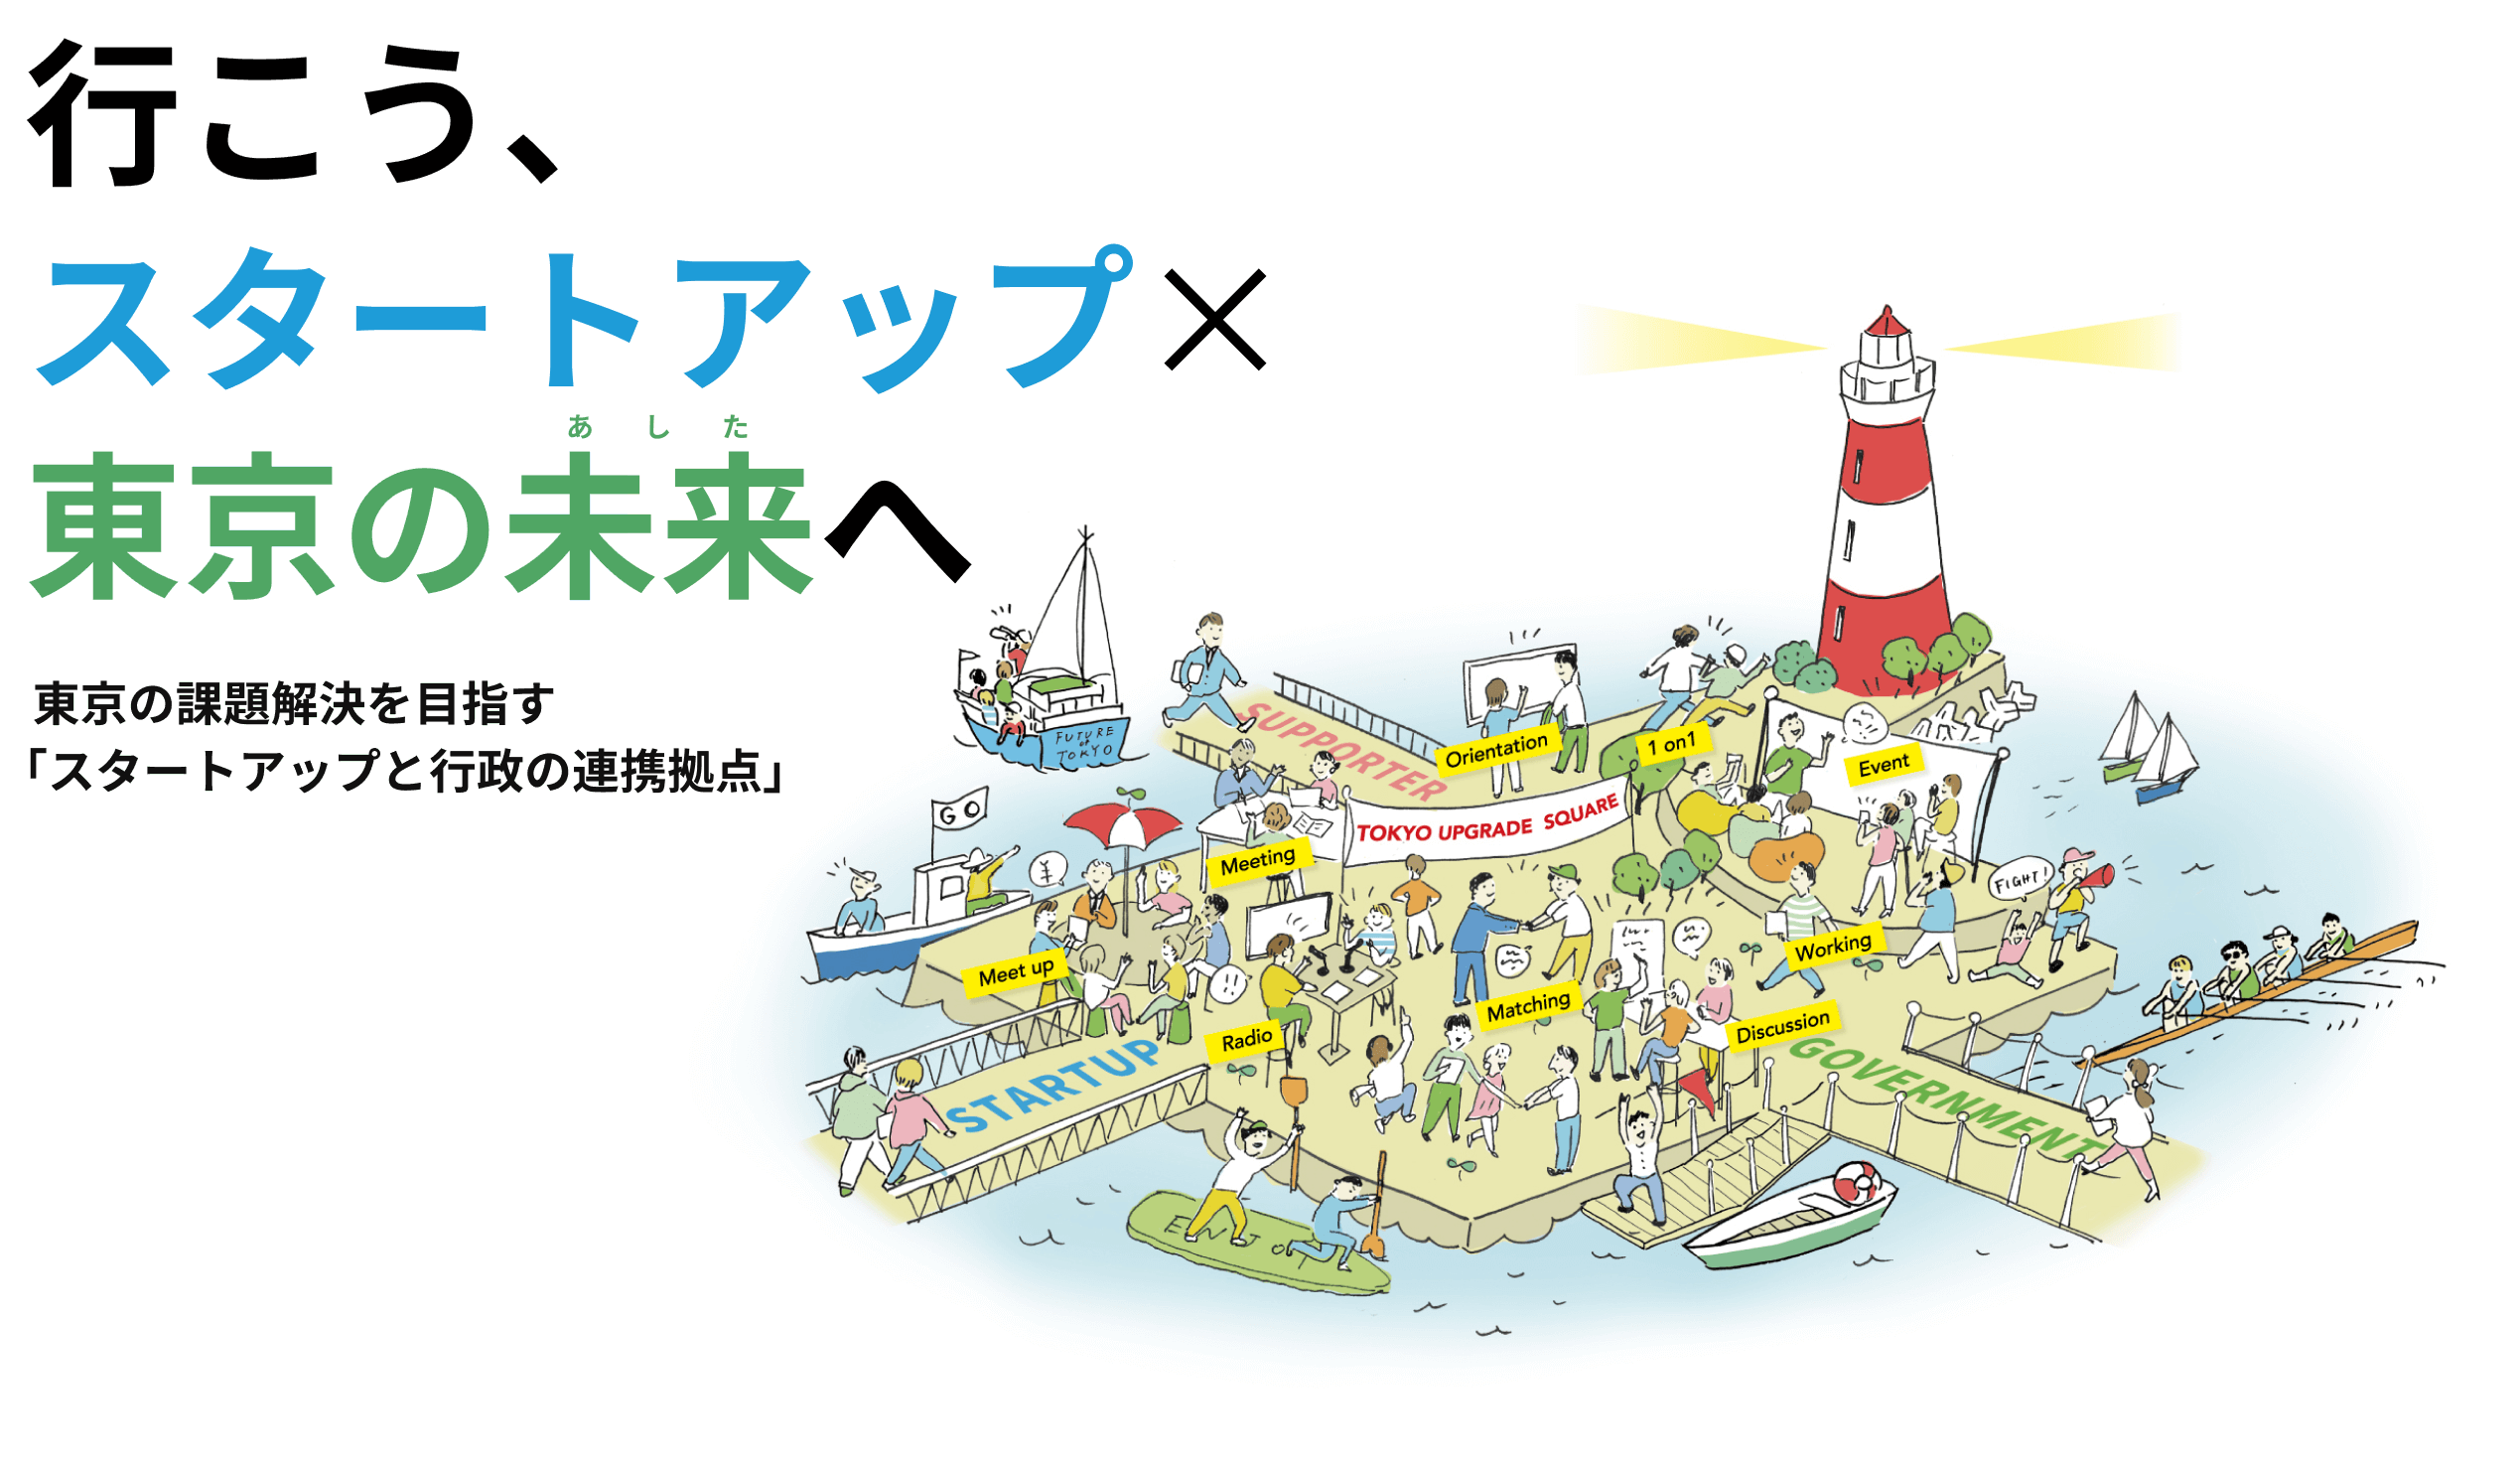 行こう、スタートアップ×東京の未来へ 東京の課題解決を目指すスタートアップと行政の連携拠点